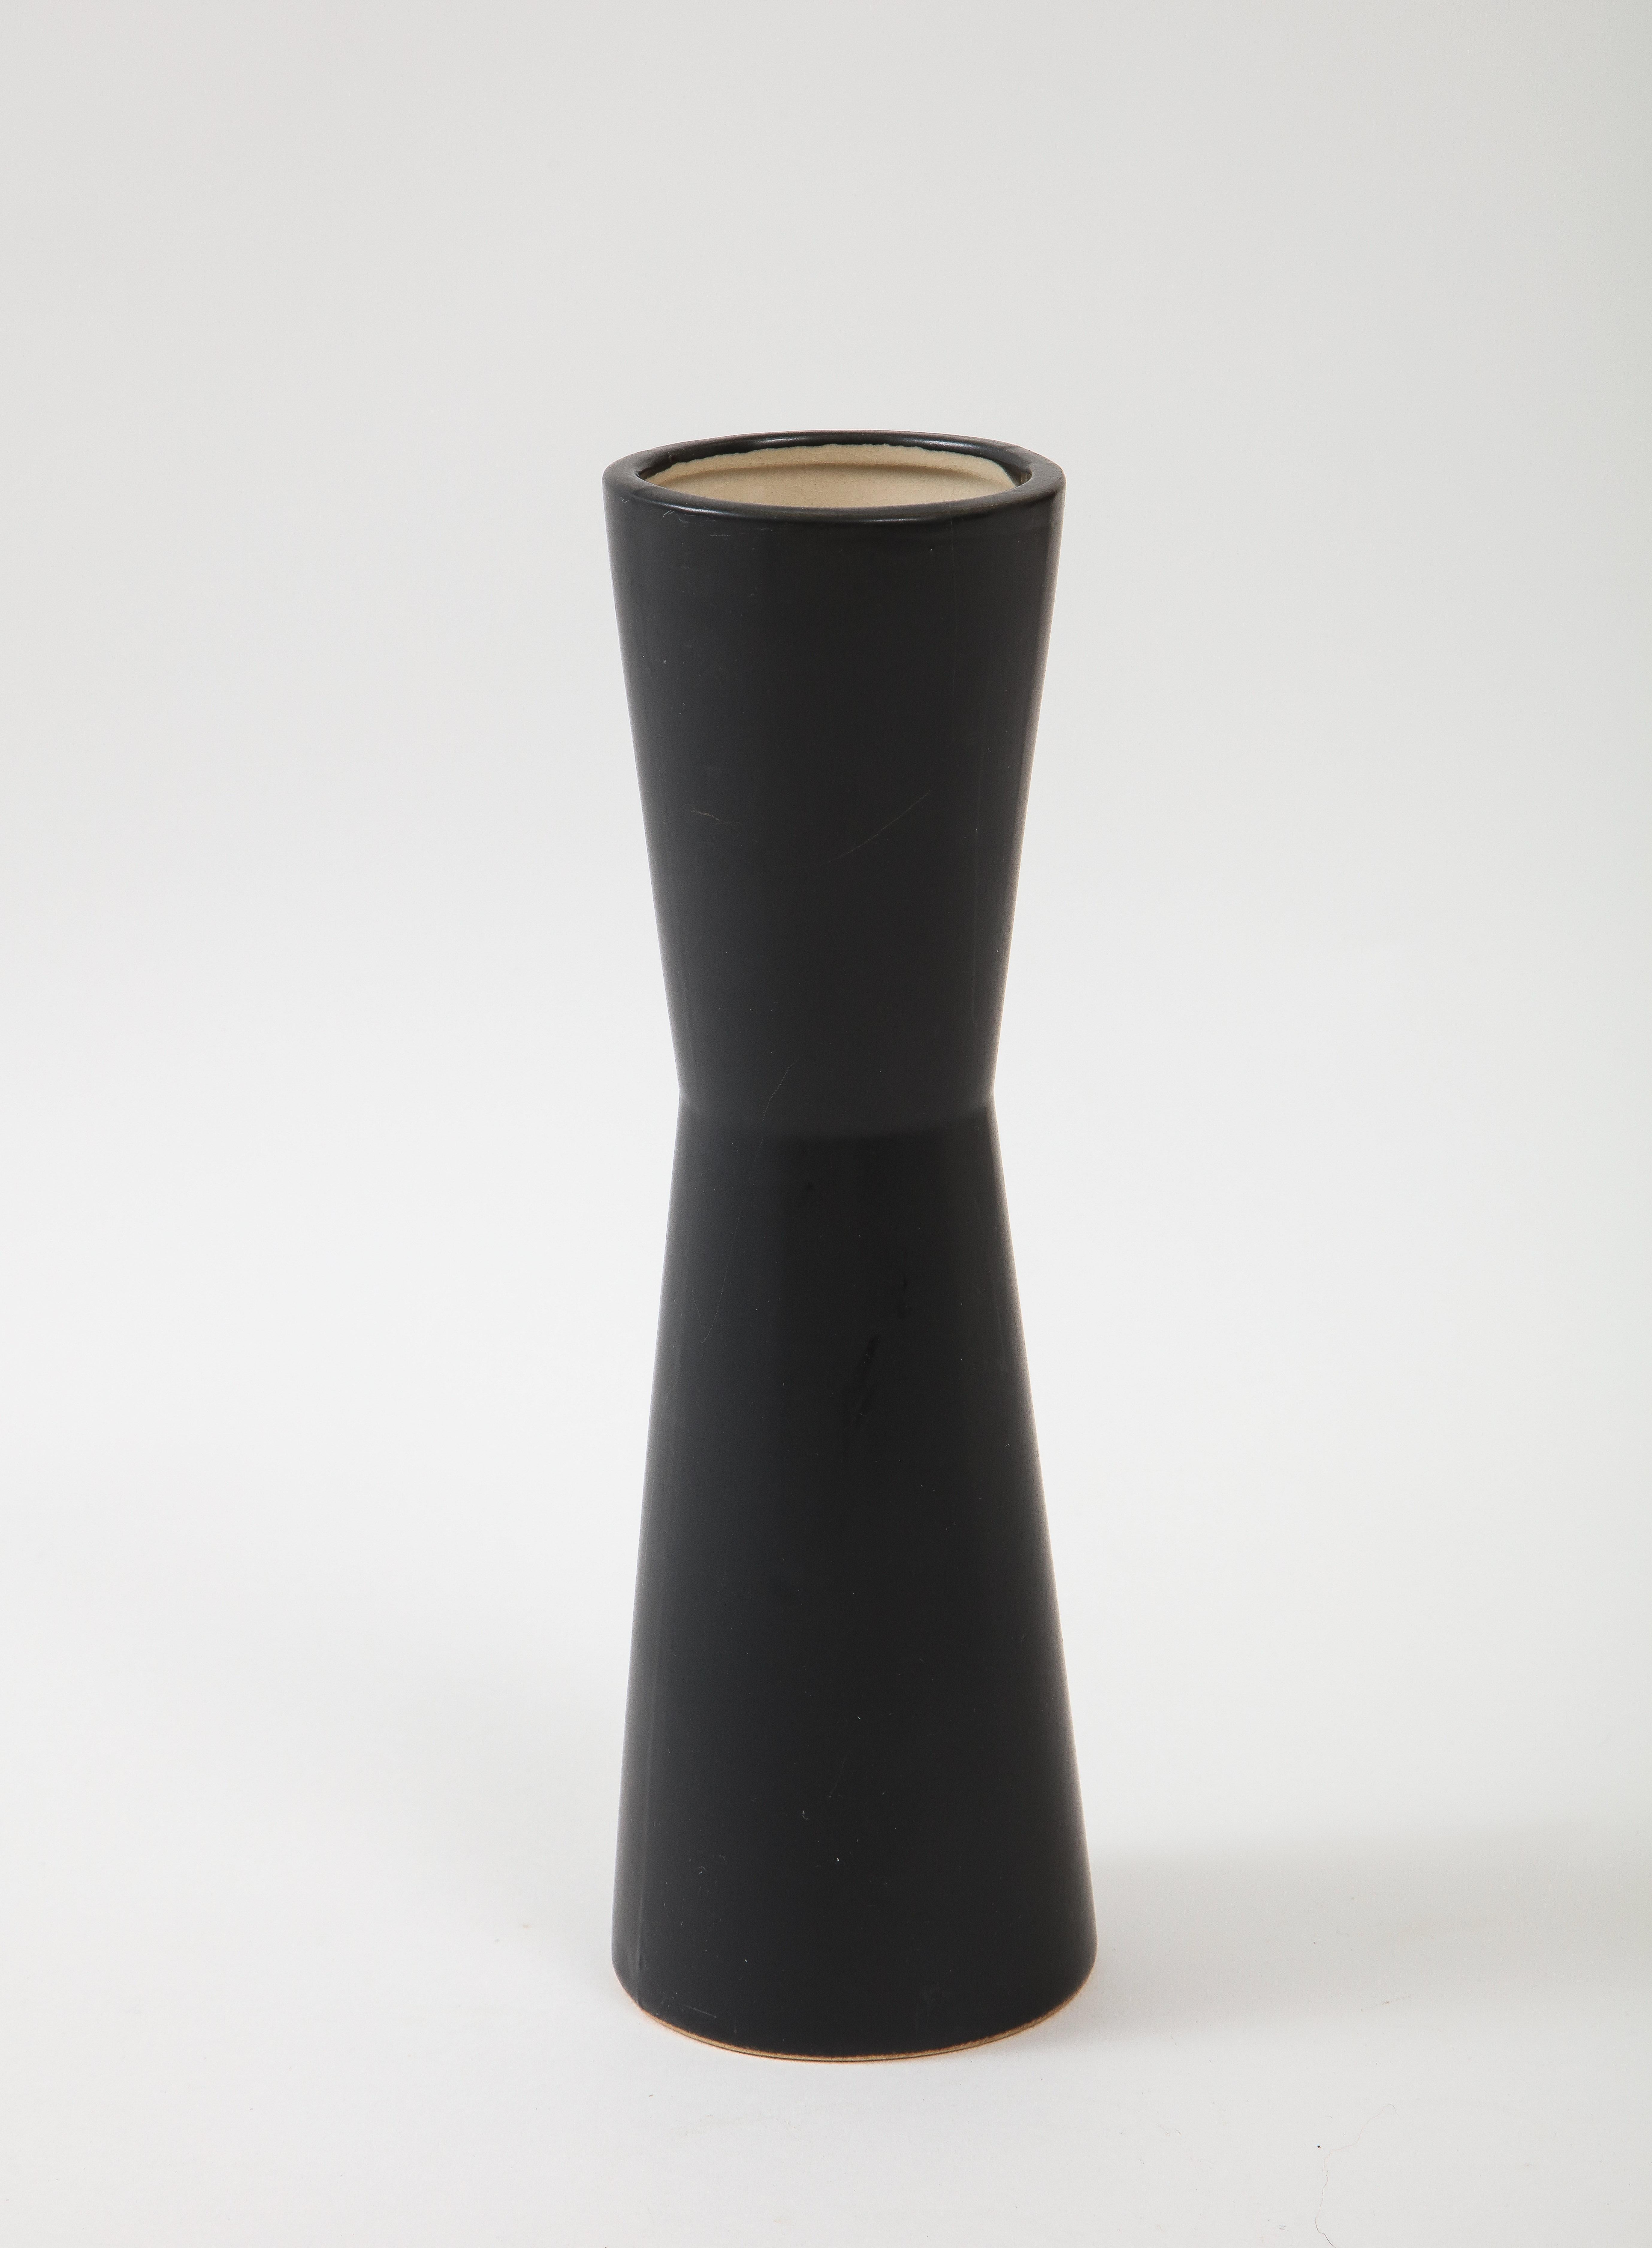 French Pair of Modernist Ceramic Matte Black Vases, France, 1950's